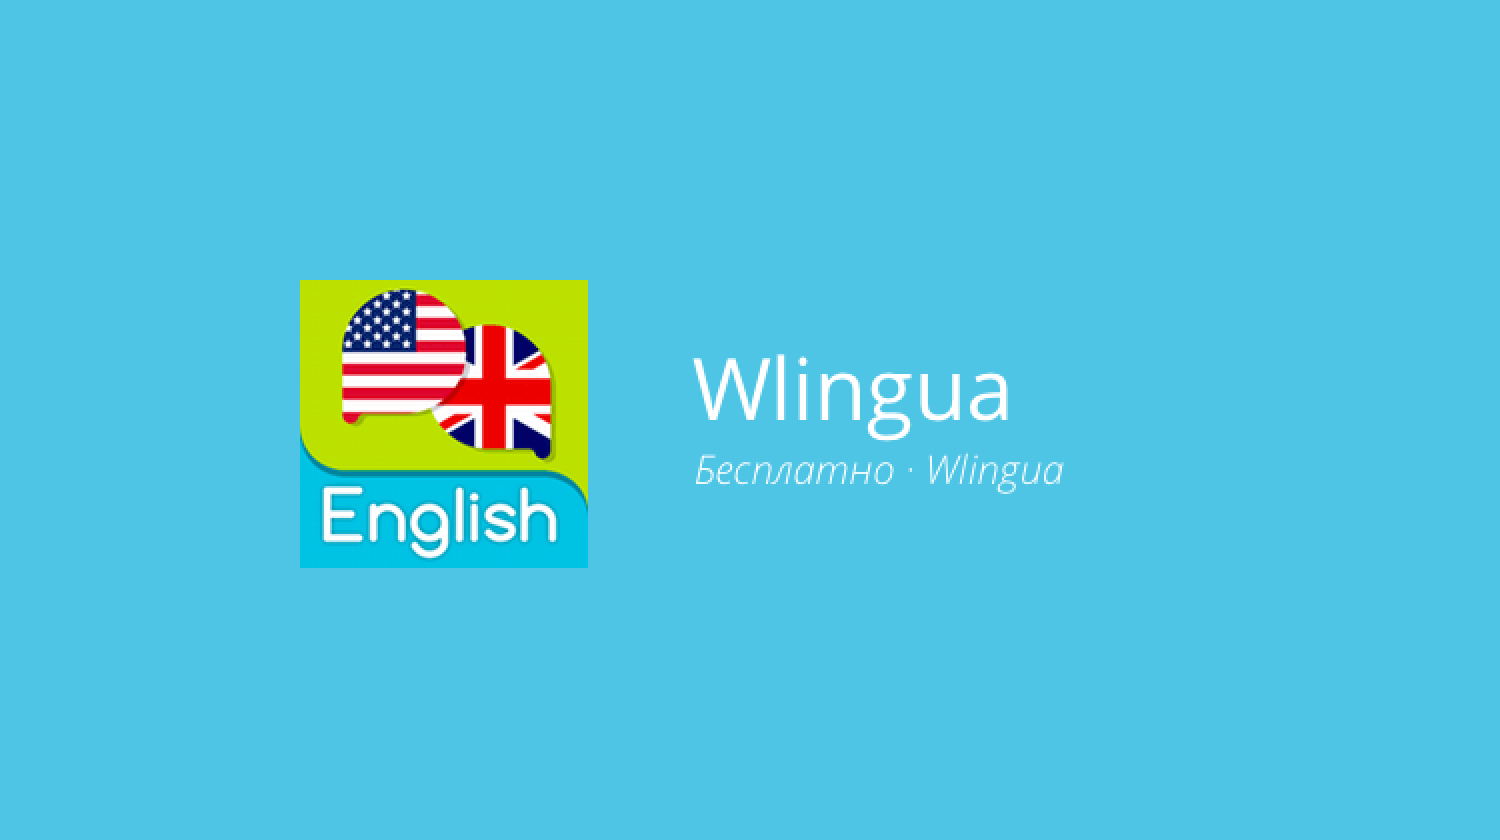 Wlingua — изучаем английский в любом месте. Фото.